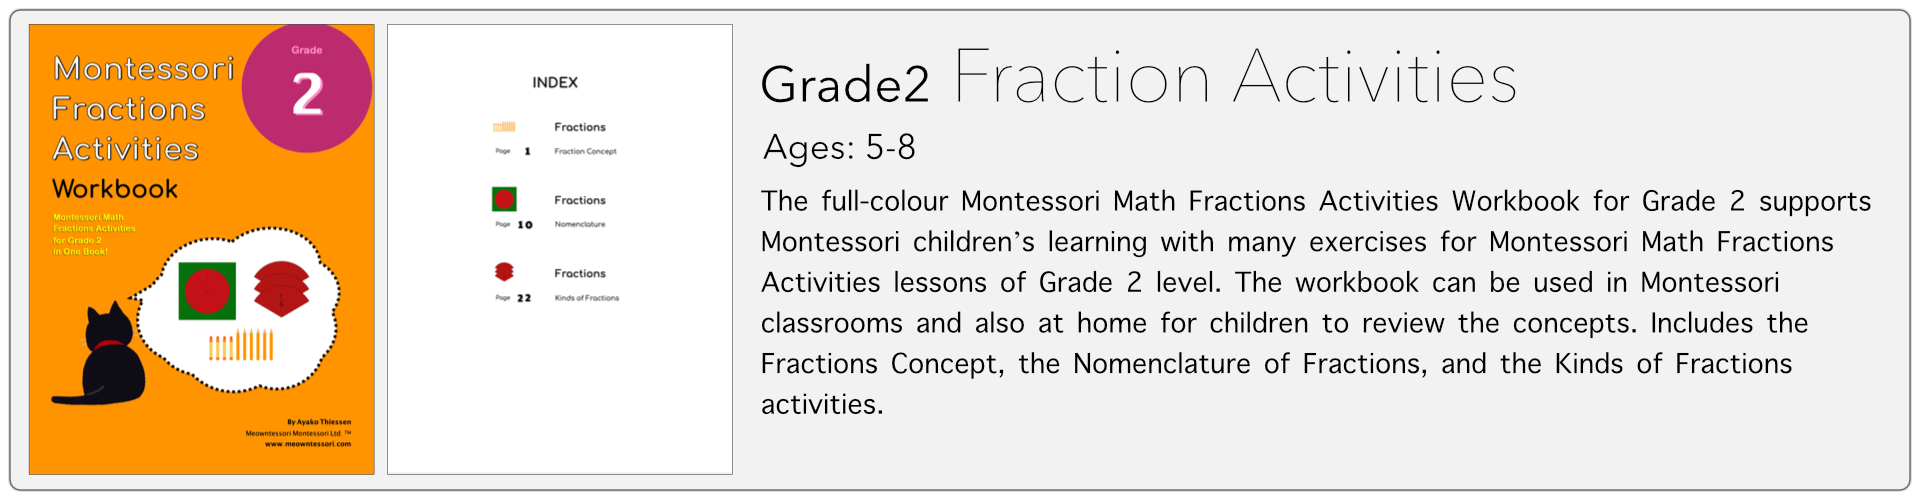 grade2 fraction